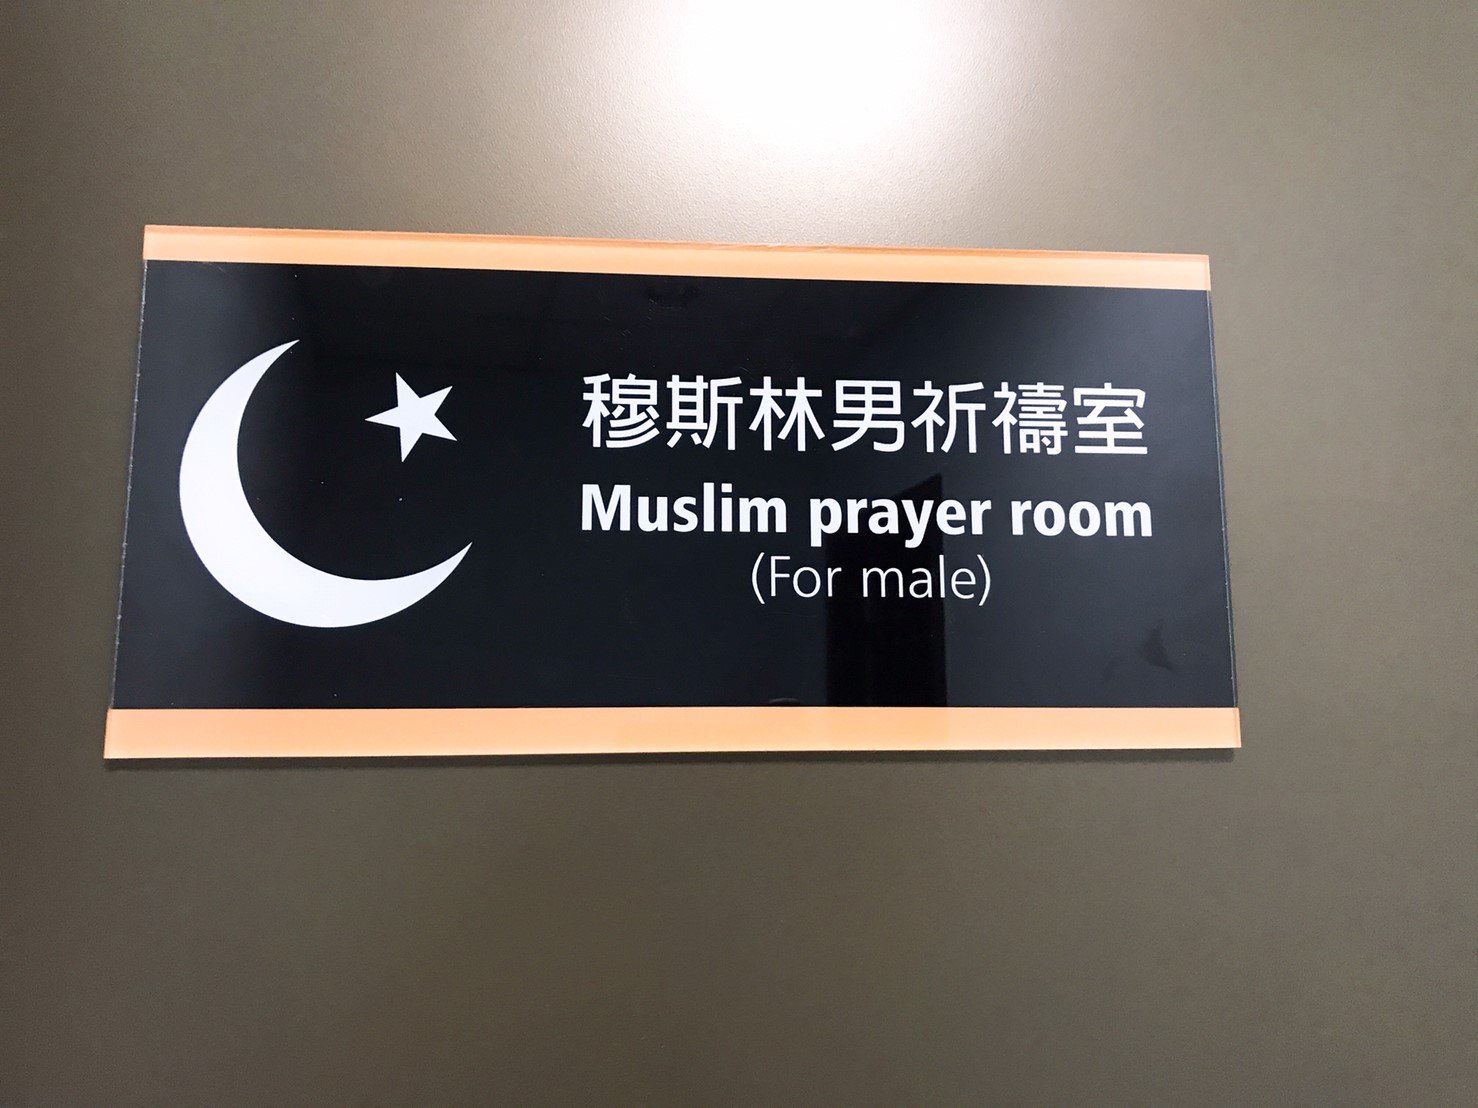 穆斯林祈禱室入口標示